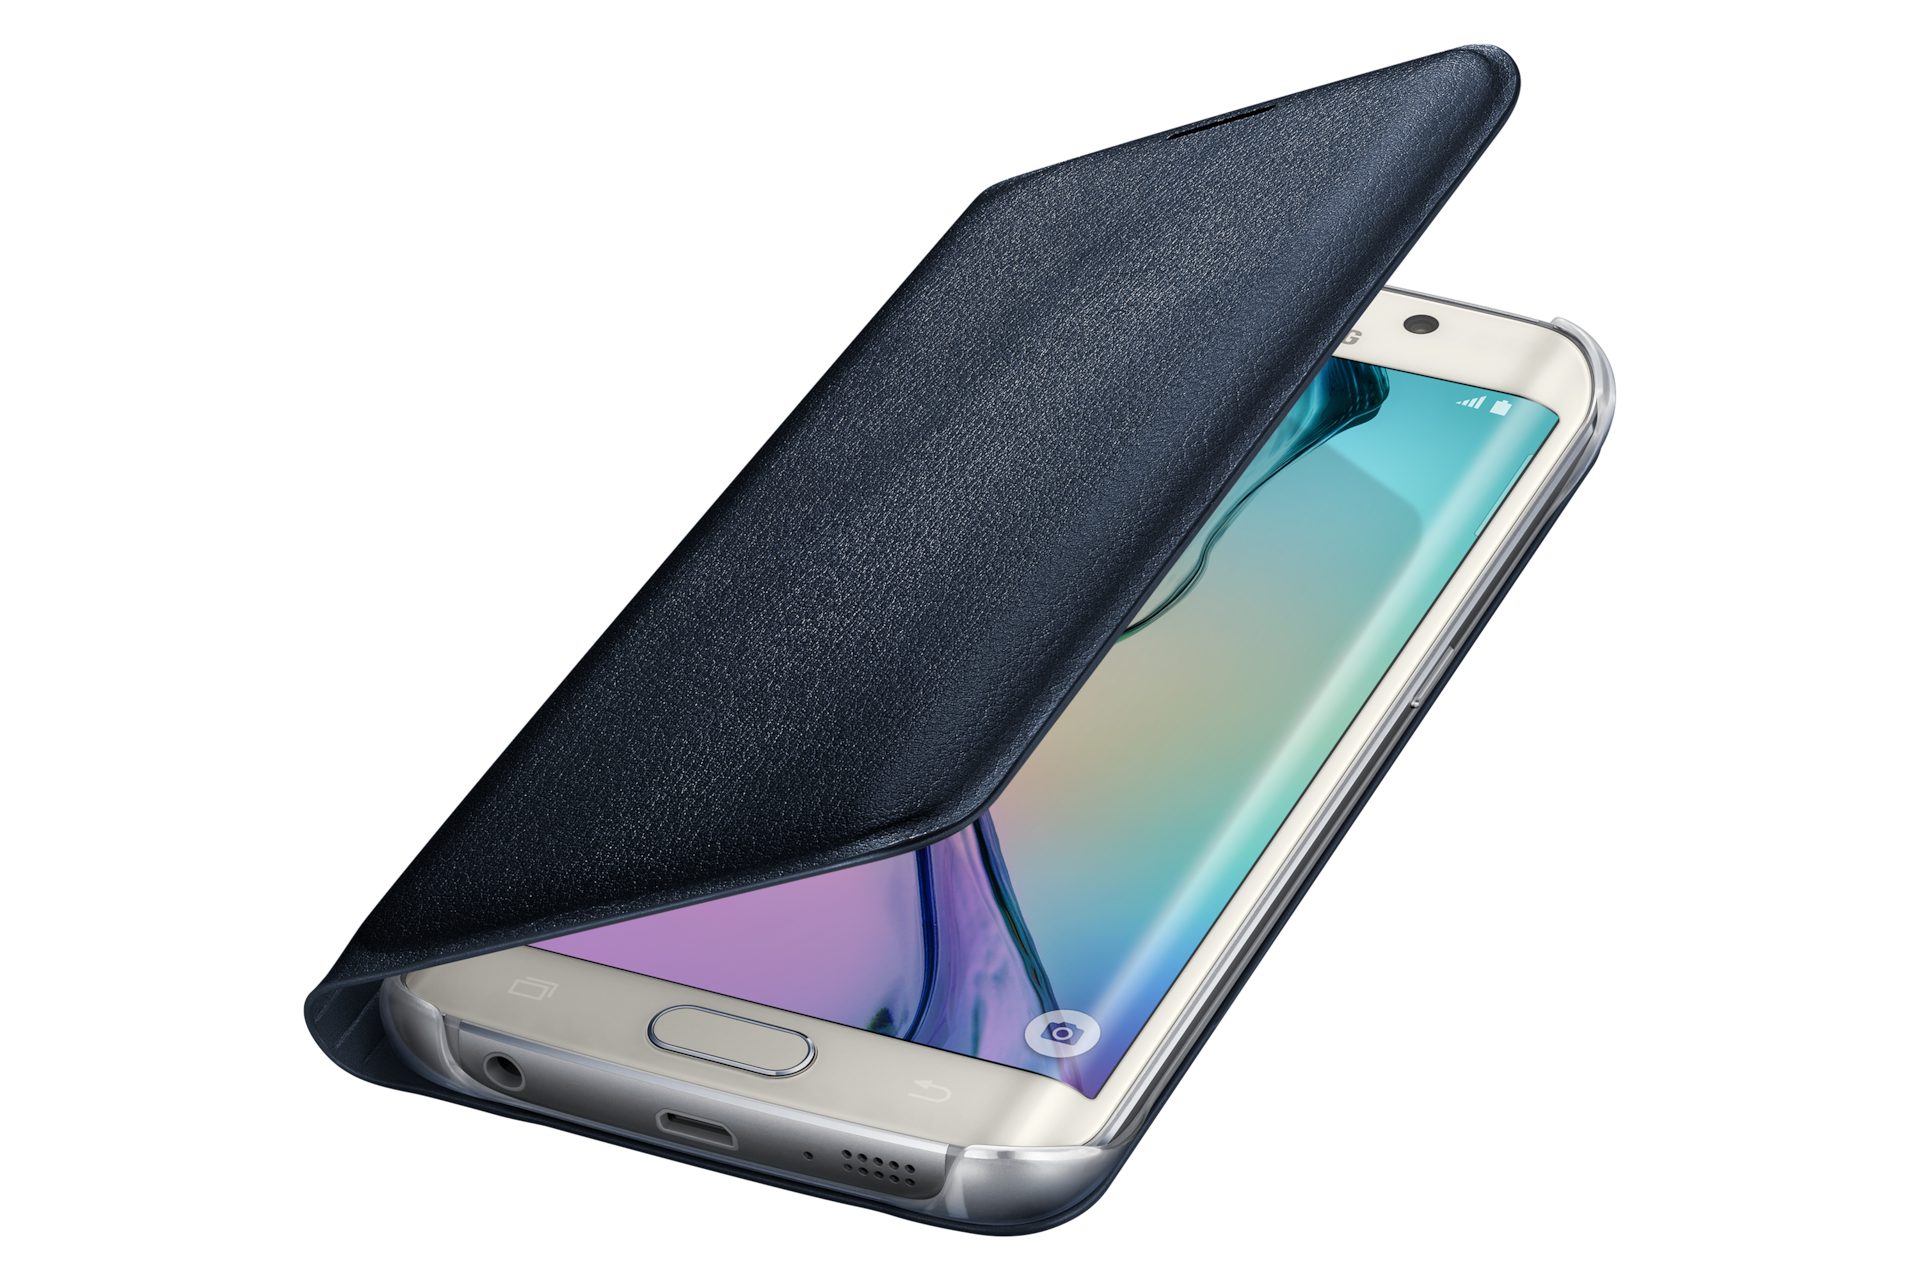 Etui à rabat Noir pour Galaxy S6 edge, Black  Samsung France